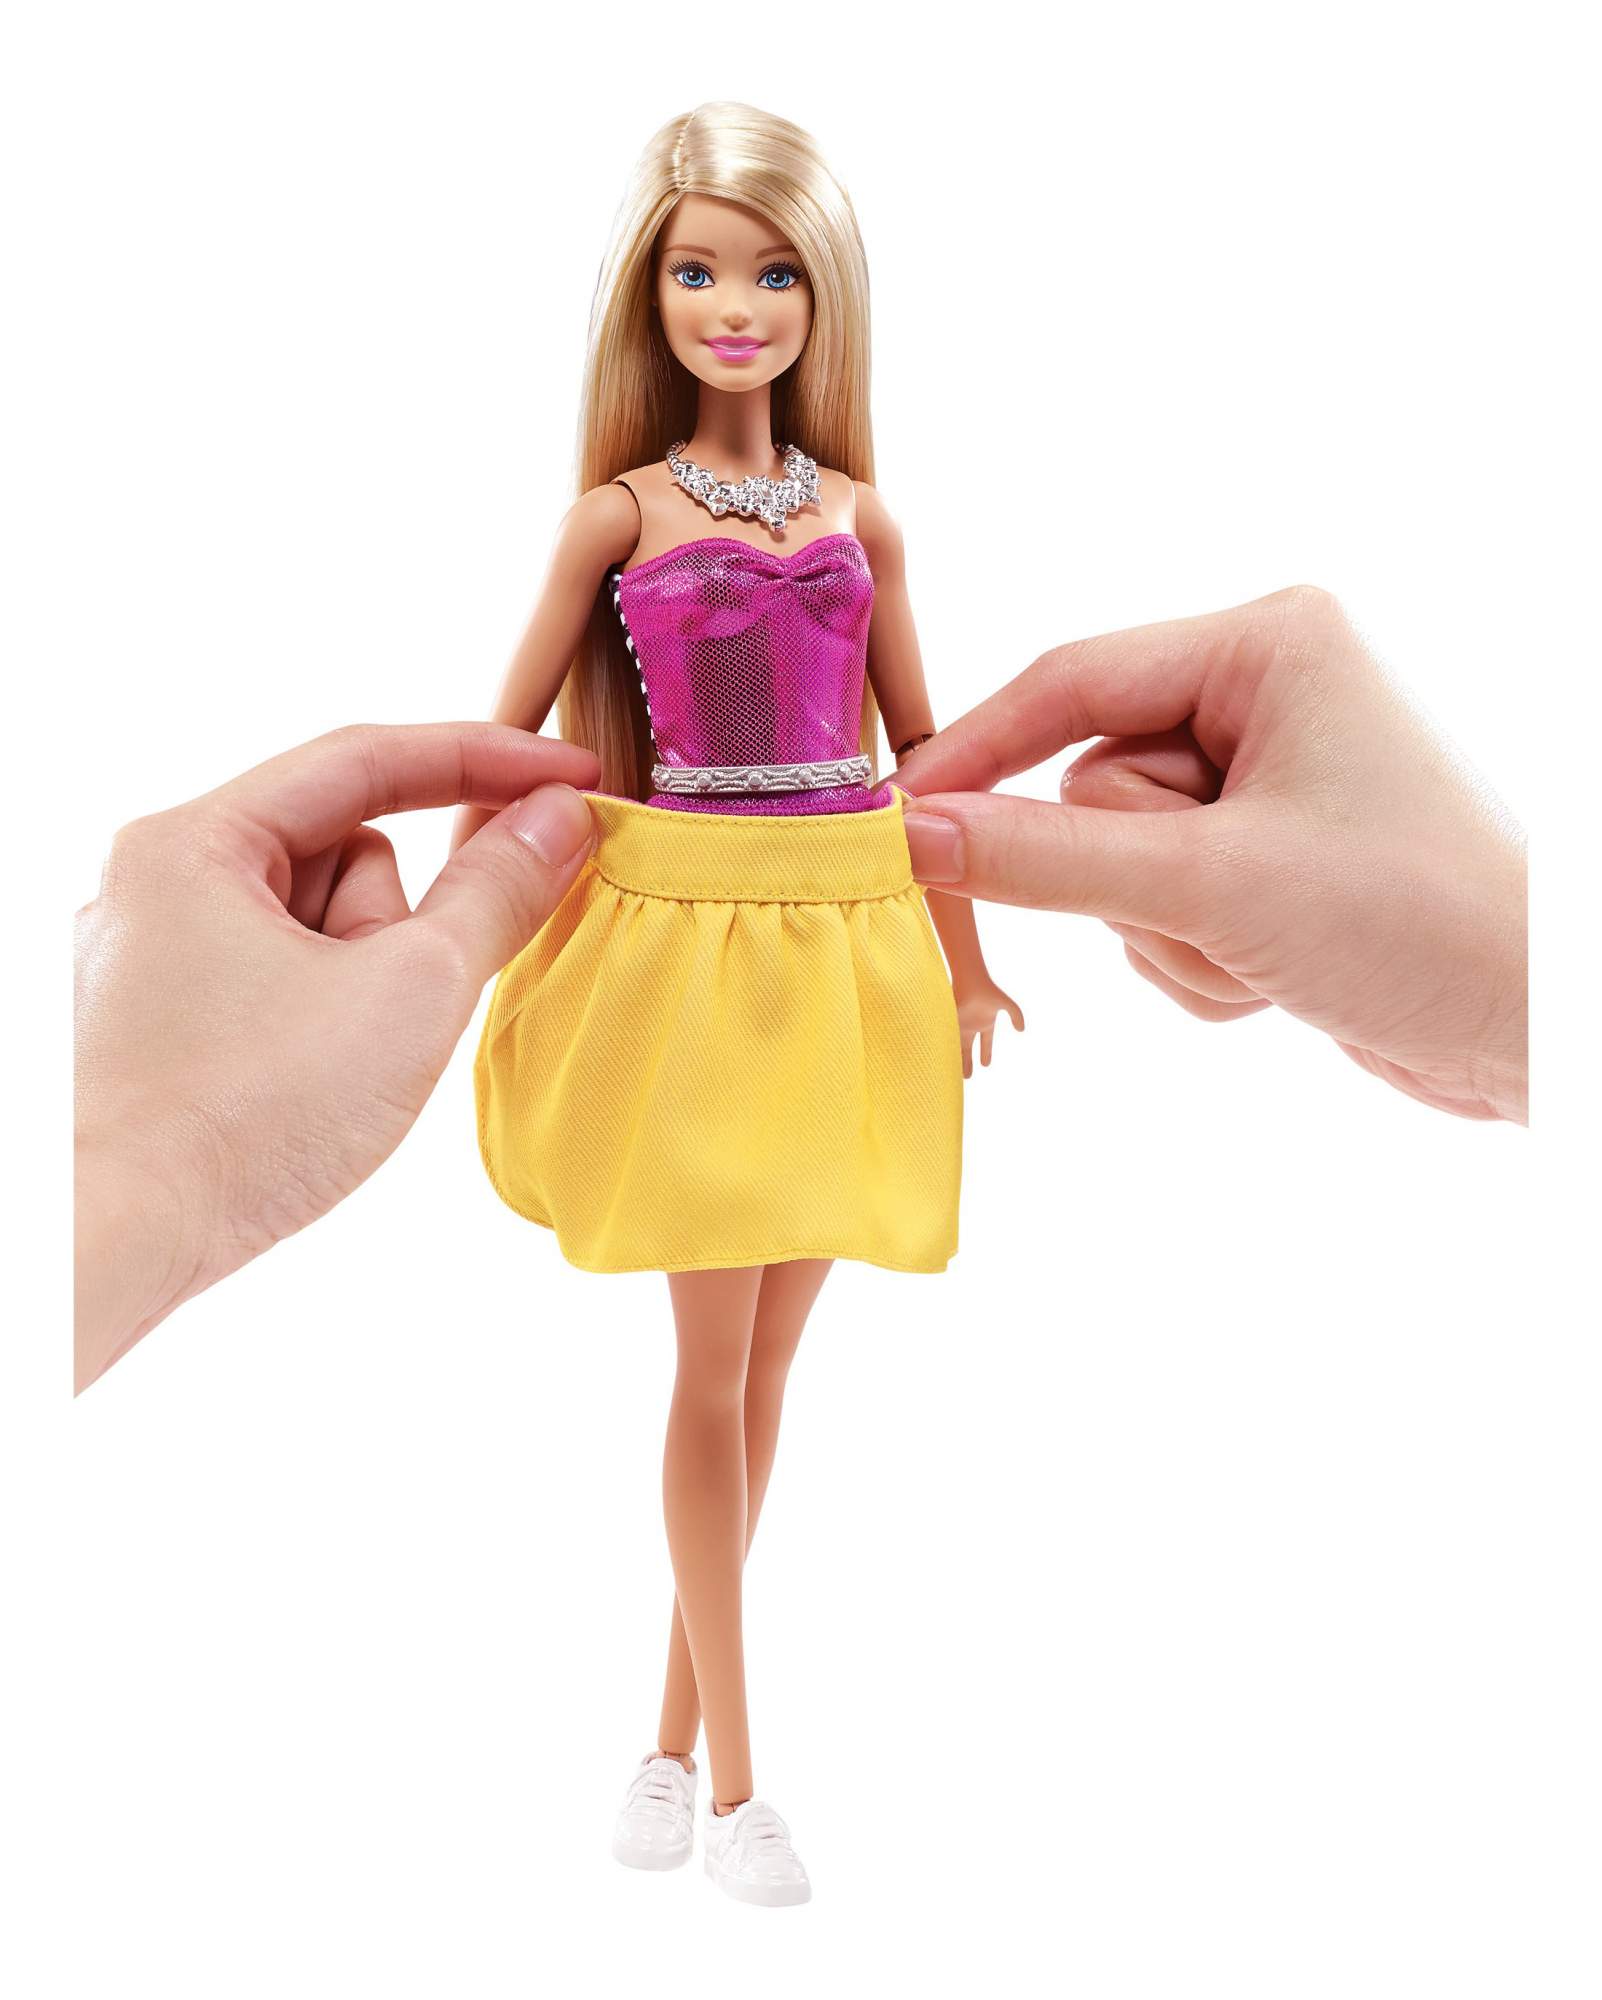 Все про кукол барби: Список игровых серий barbie — Куклопедия